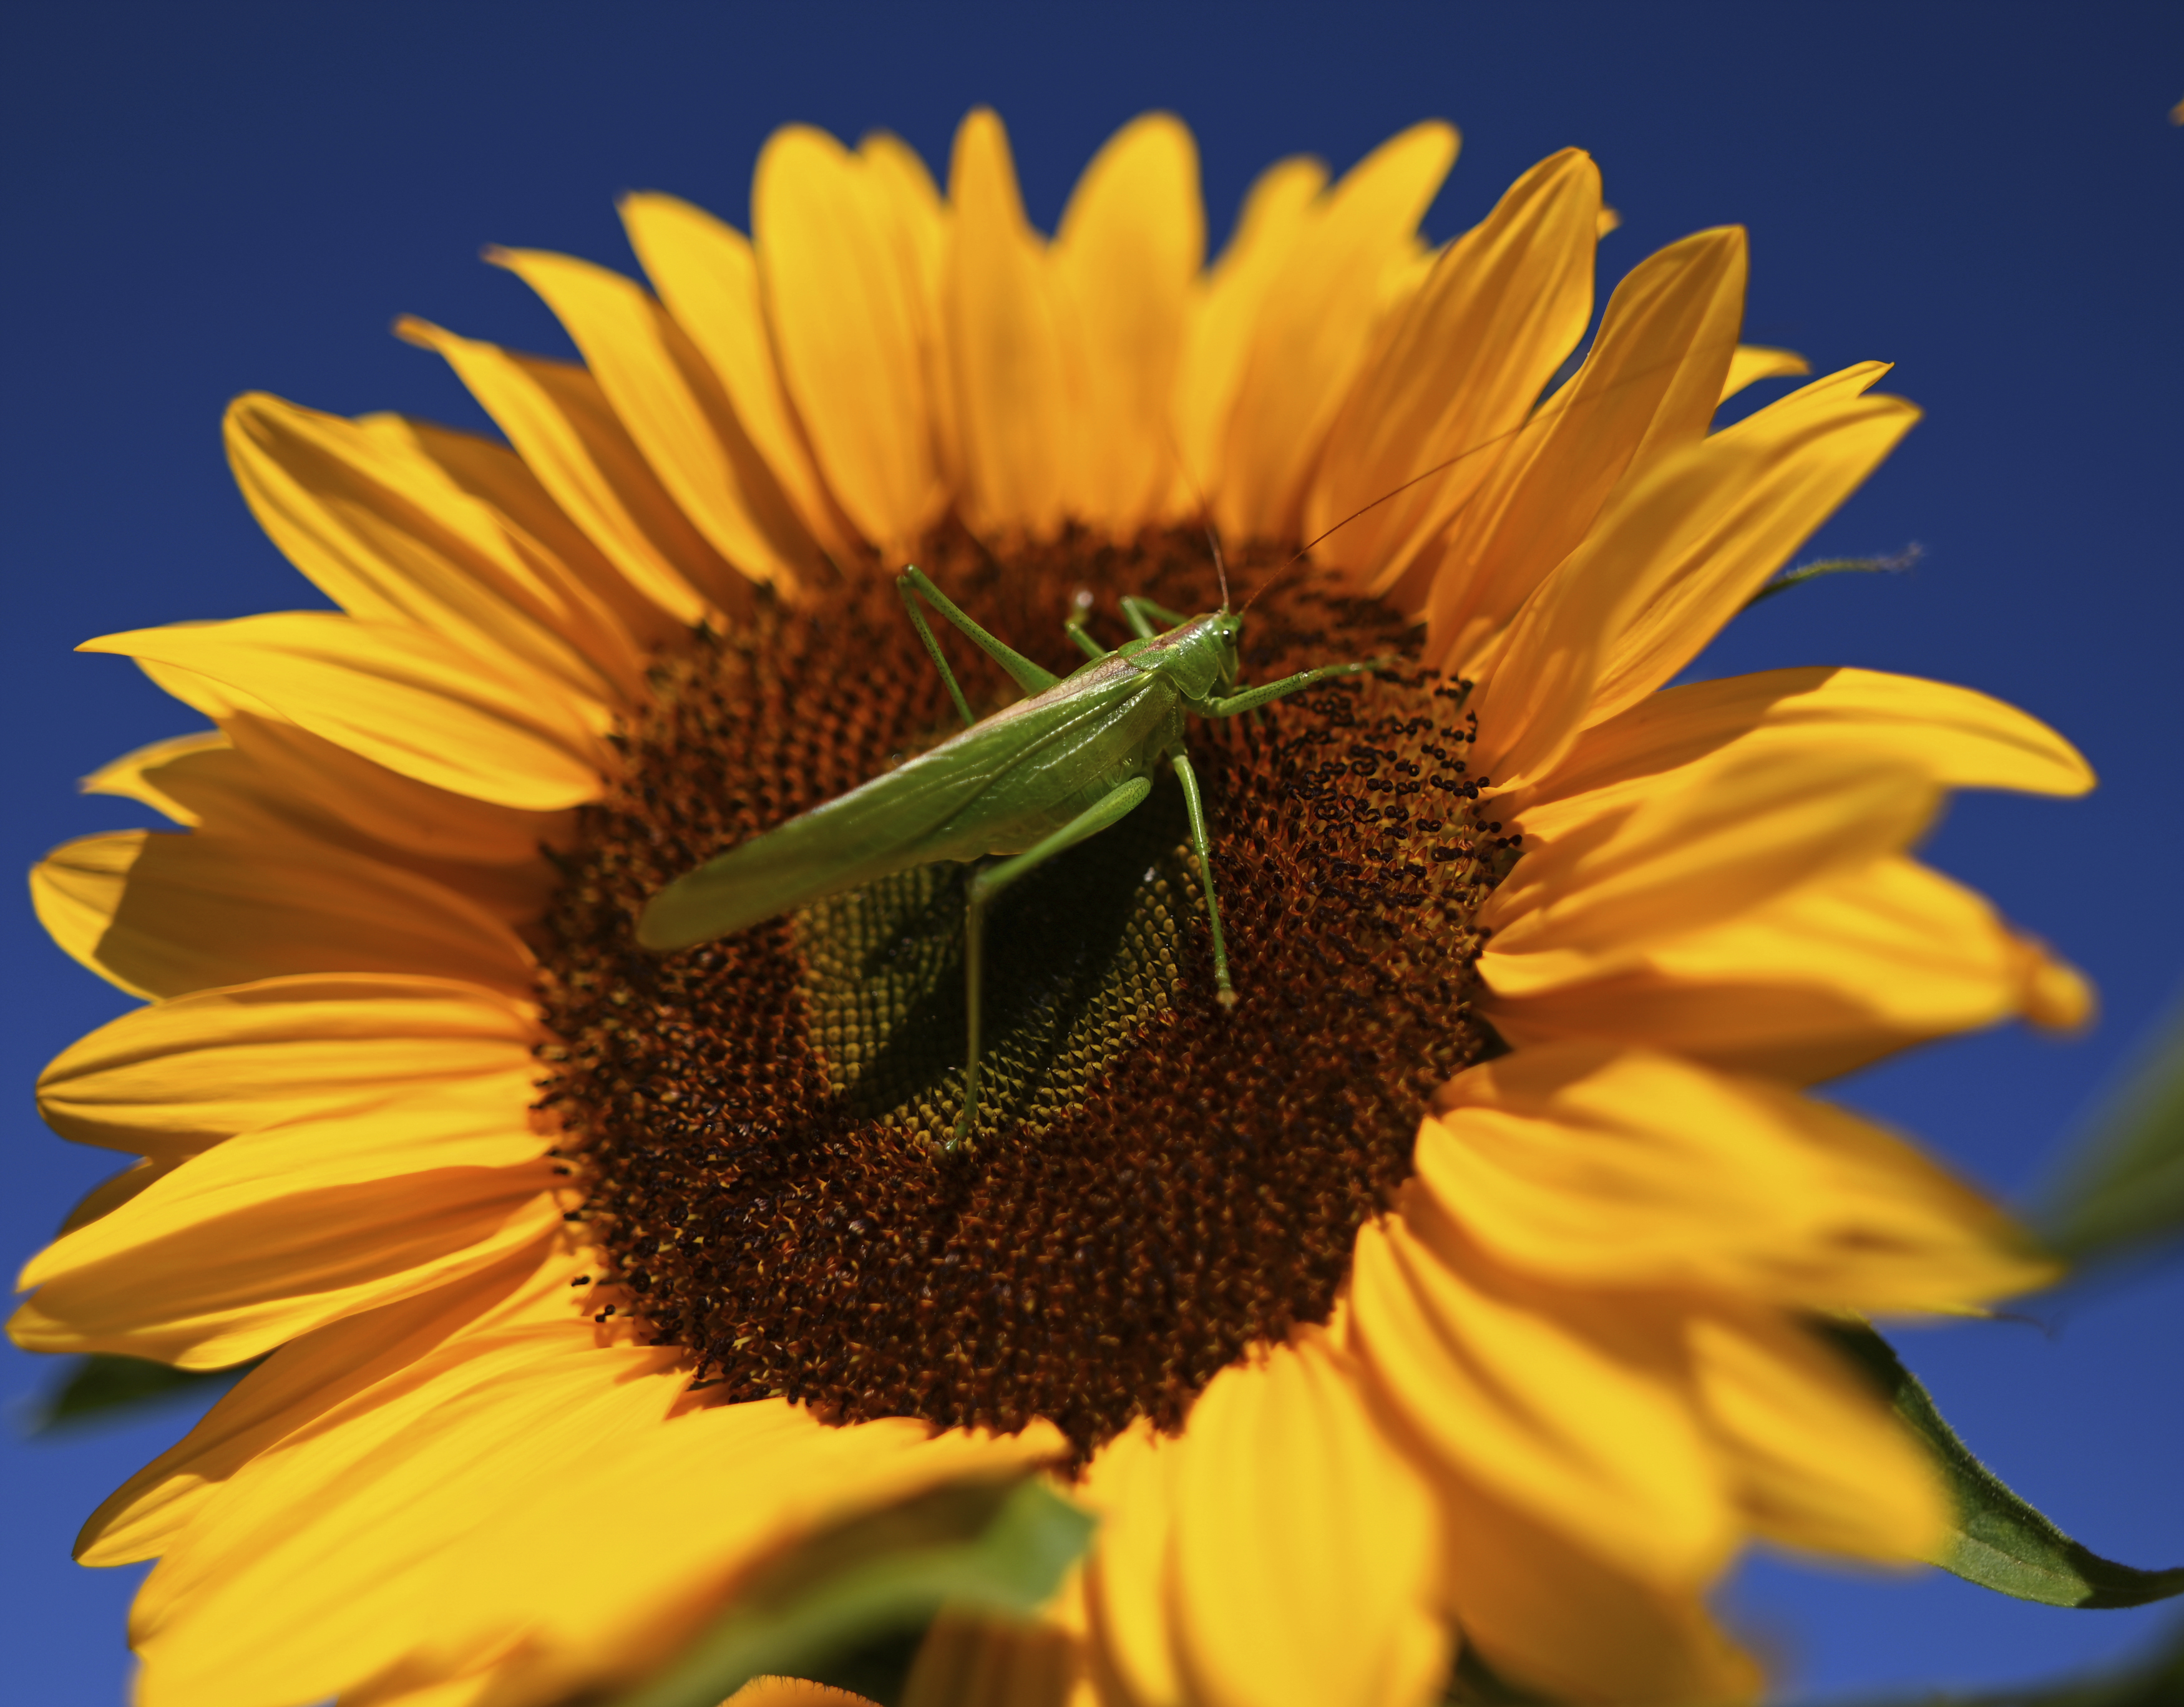 A grasshopper sits on a sunflower in Rheinau, Germany